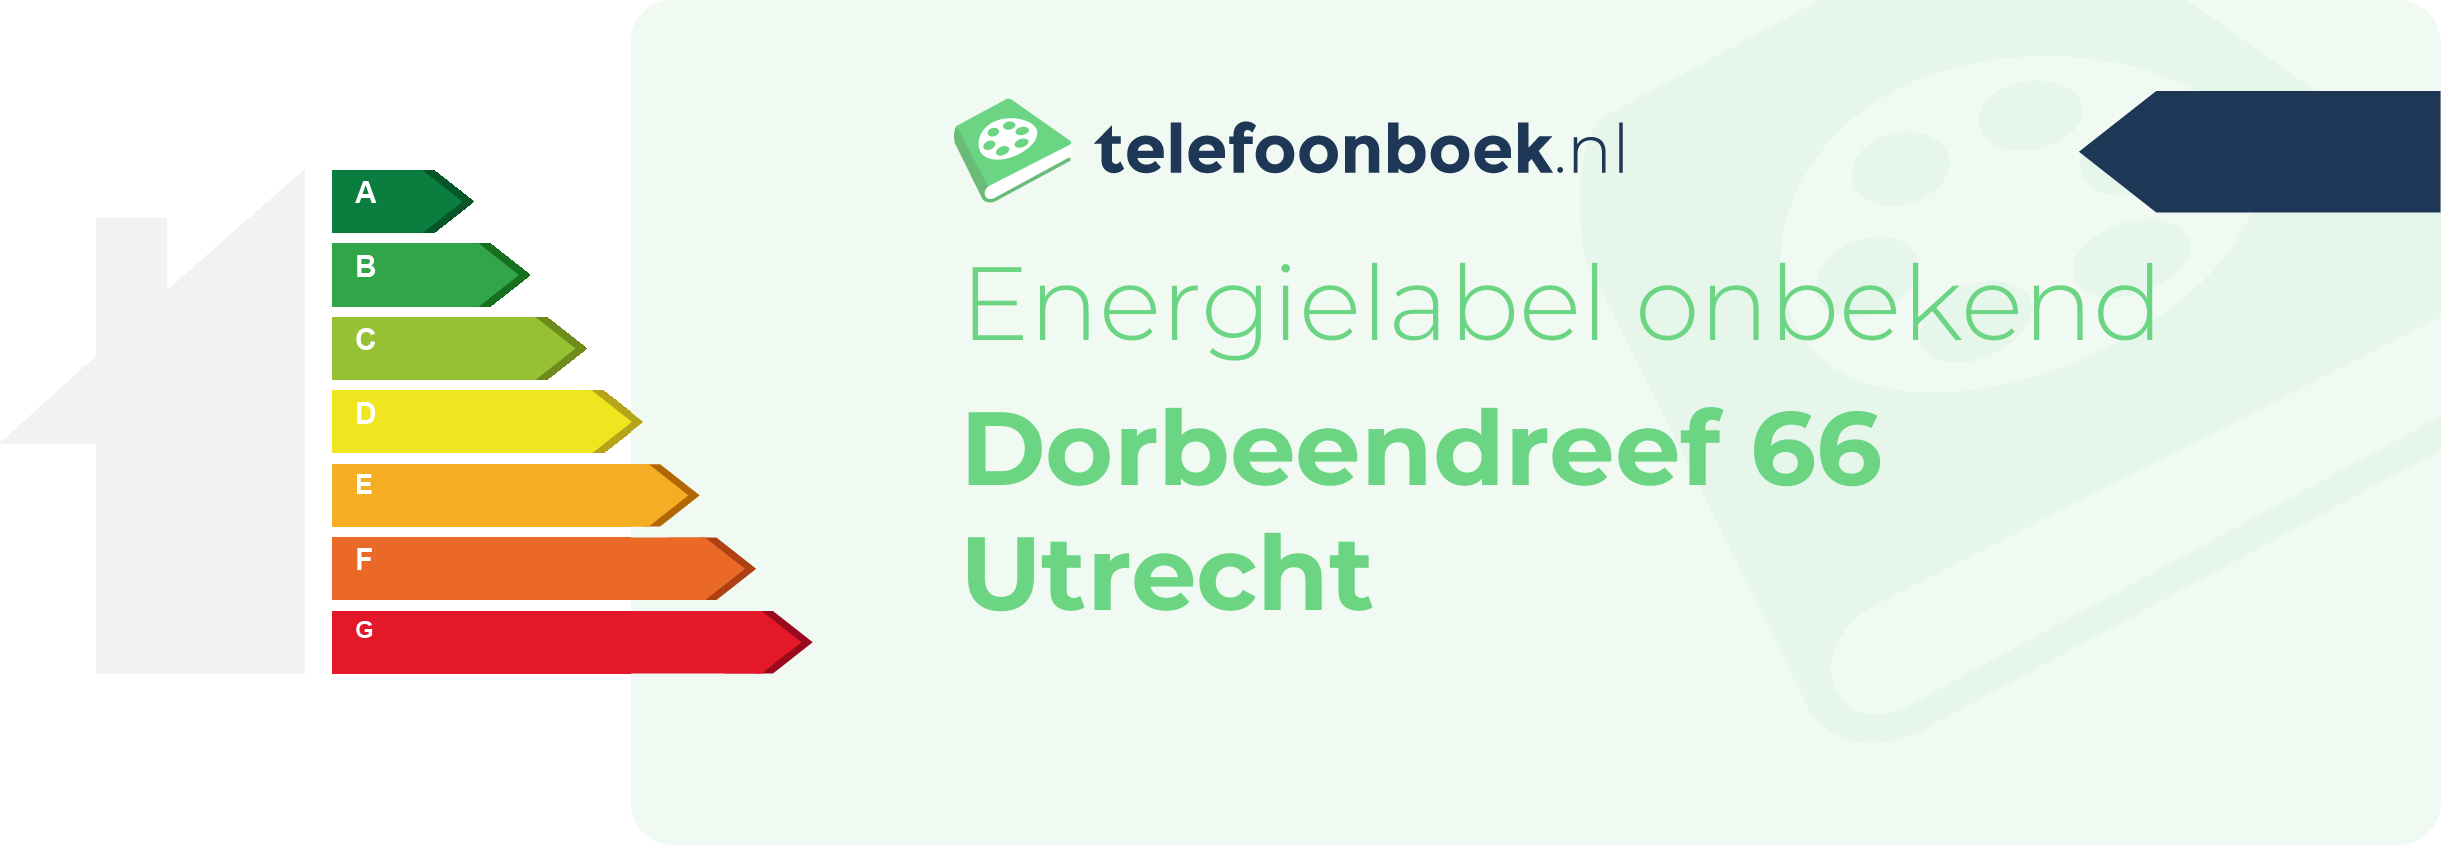 Energielabel Dorbeendreef 66 Utrecht